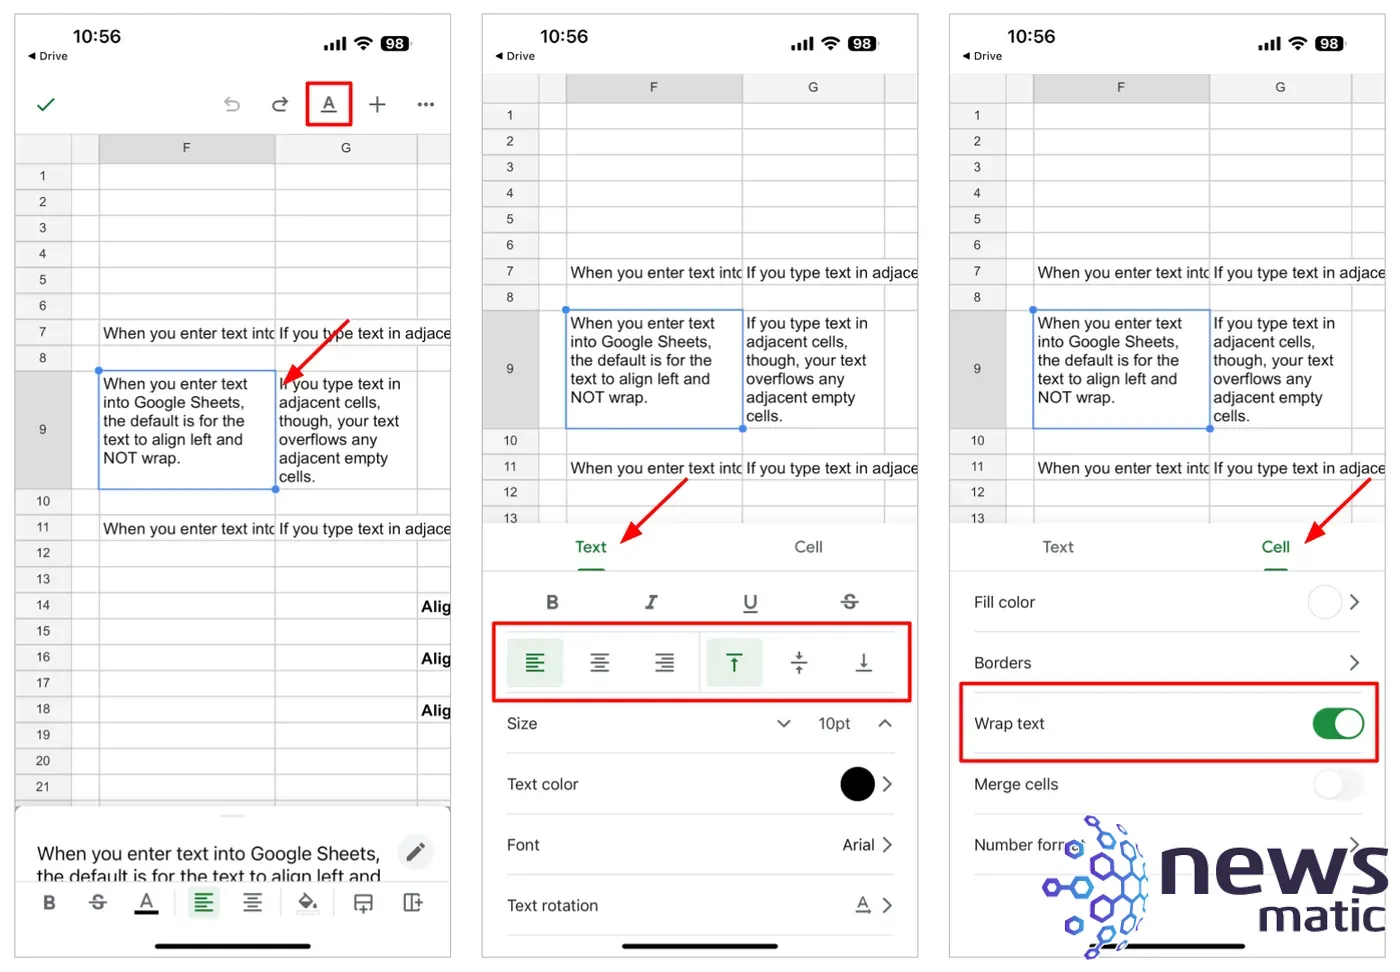 Cómo ajustar la configuración de las celdas en Google Sheets para mejorar la legibilidad - Software | Imagen 6 Newsmatic